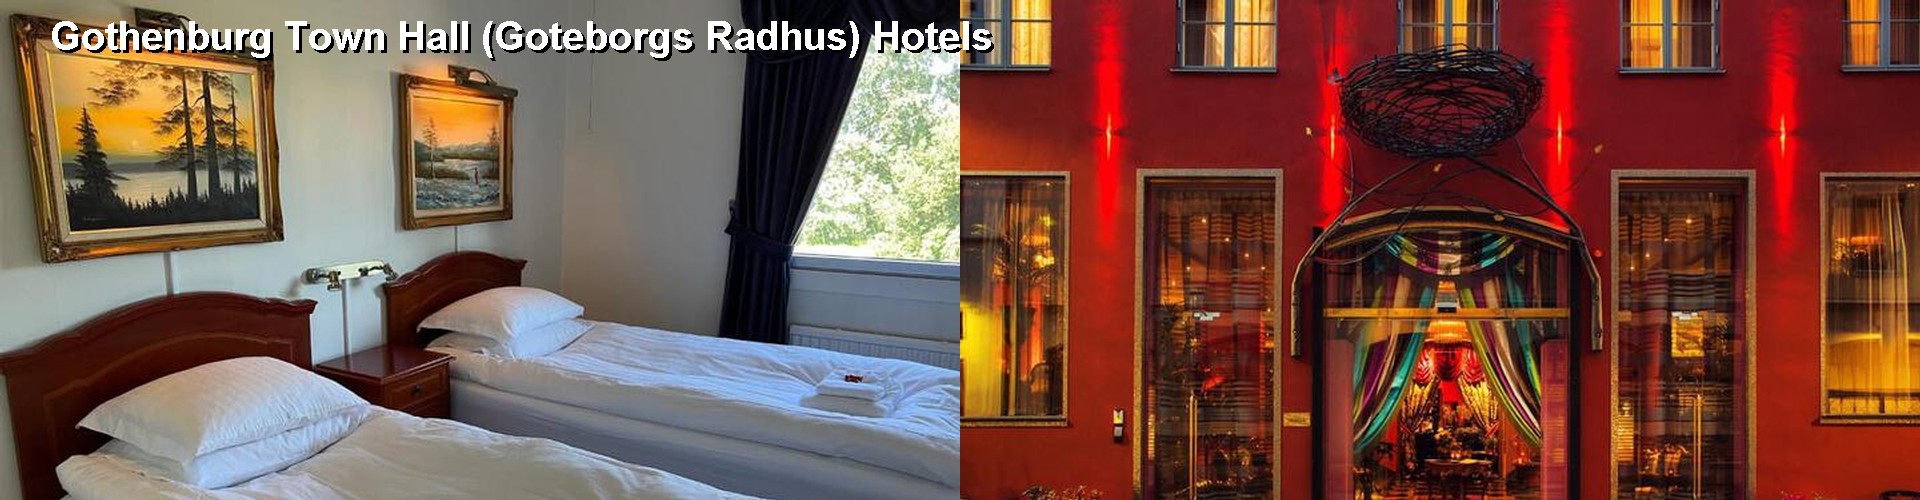 5 Best Hotels near Gothenburg Town Hall (Goteborgs Radhus)